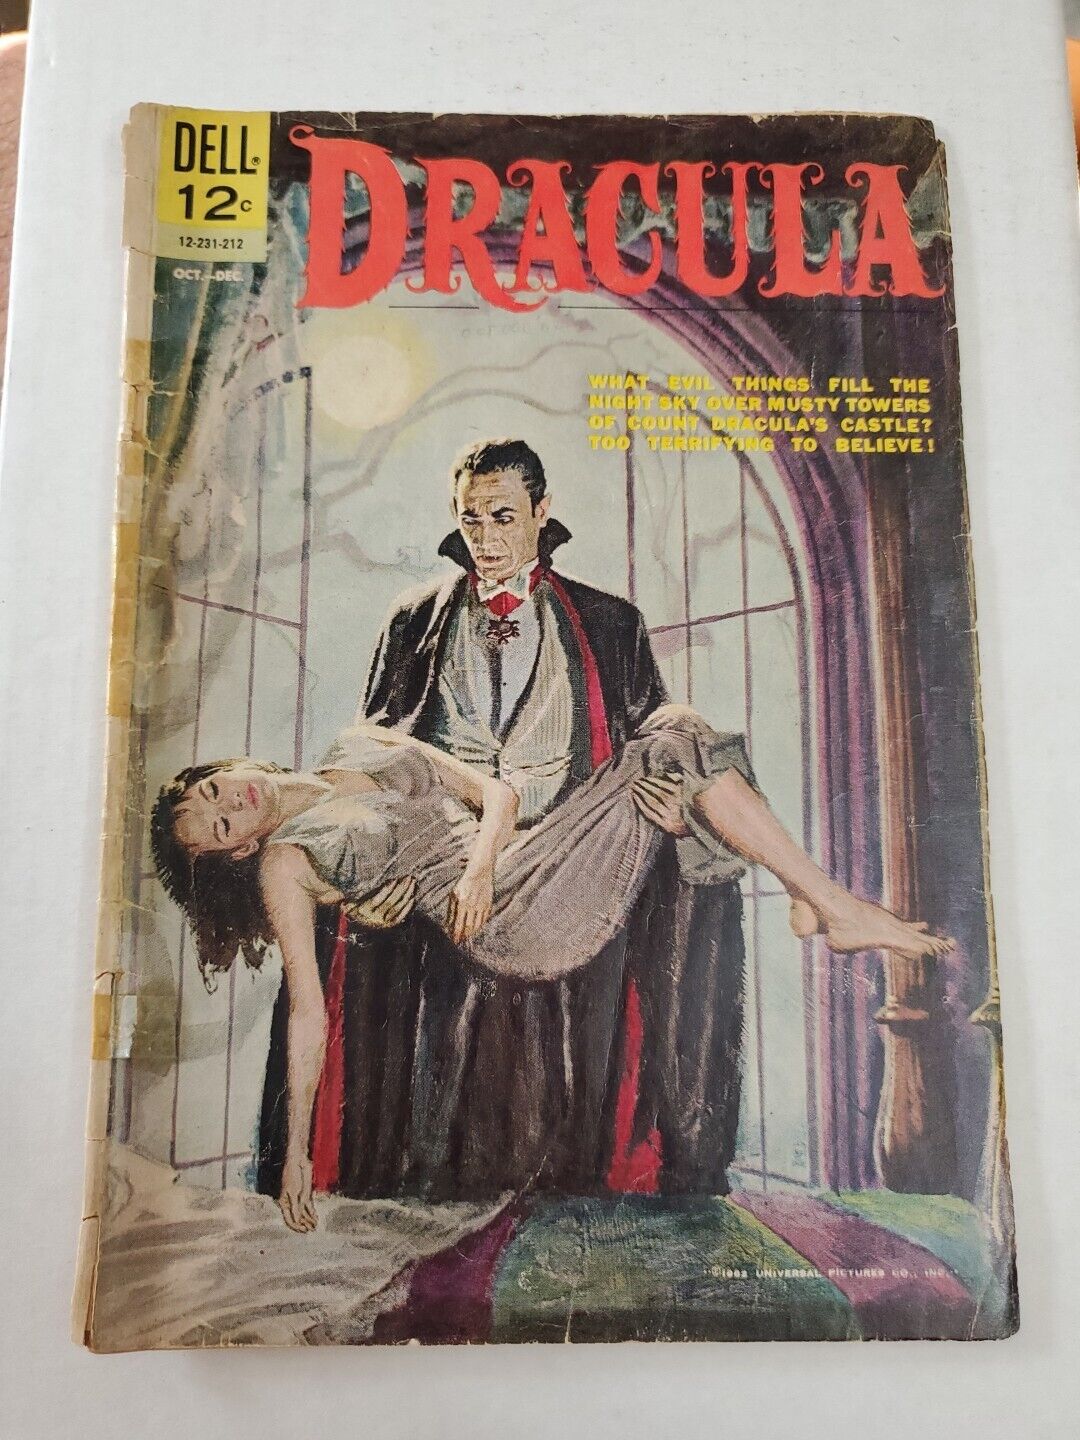 Dracula Dell Comics 12C October 1962 12-231-212 FAIR/GOOD